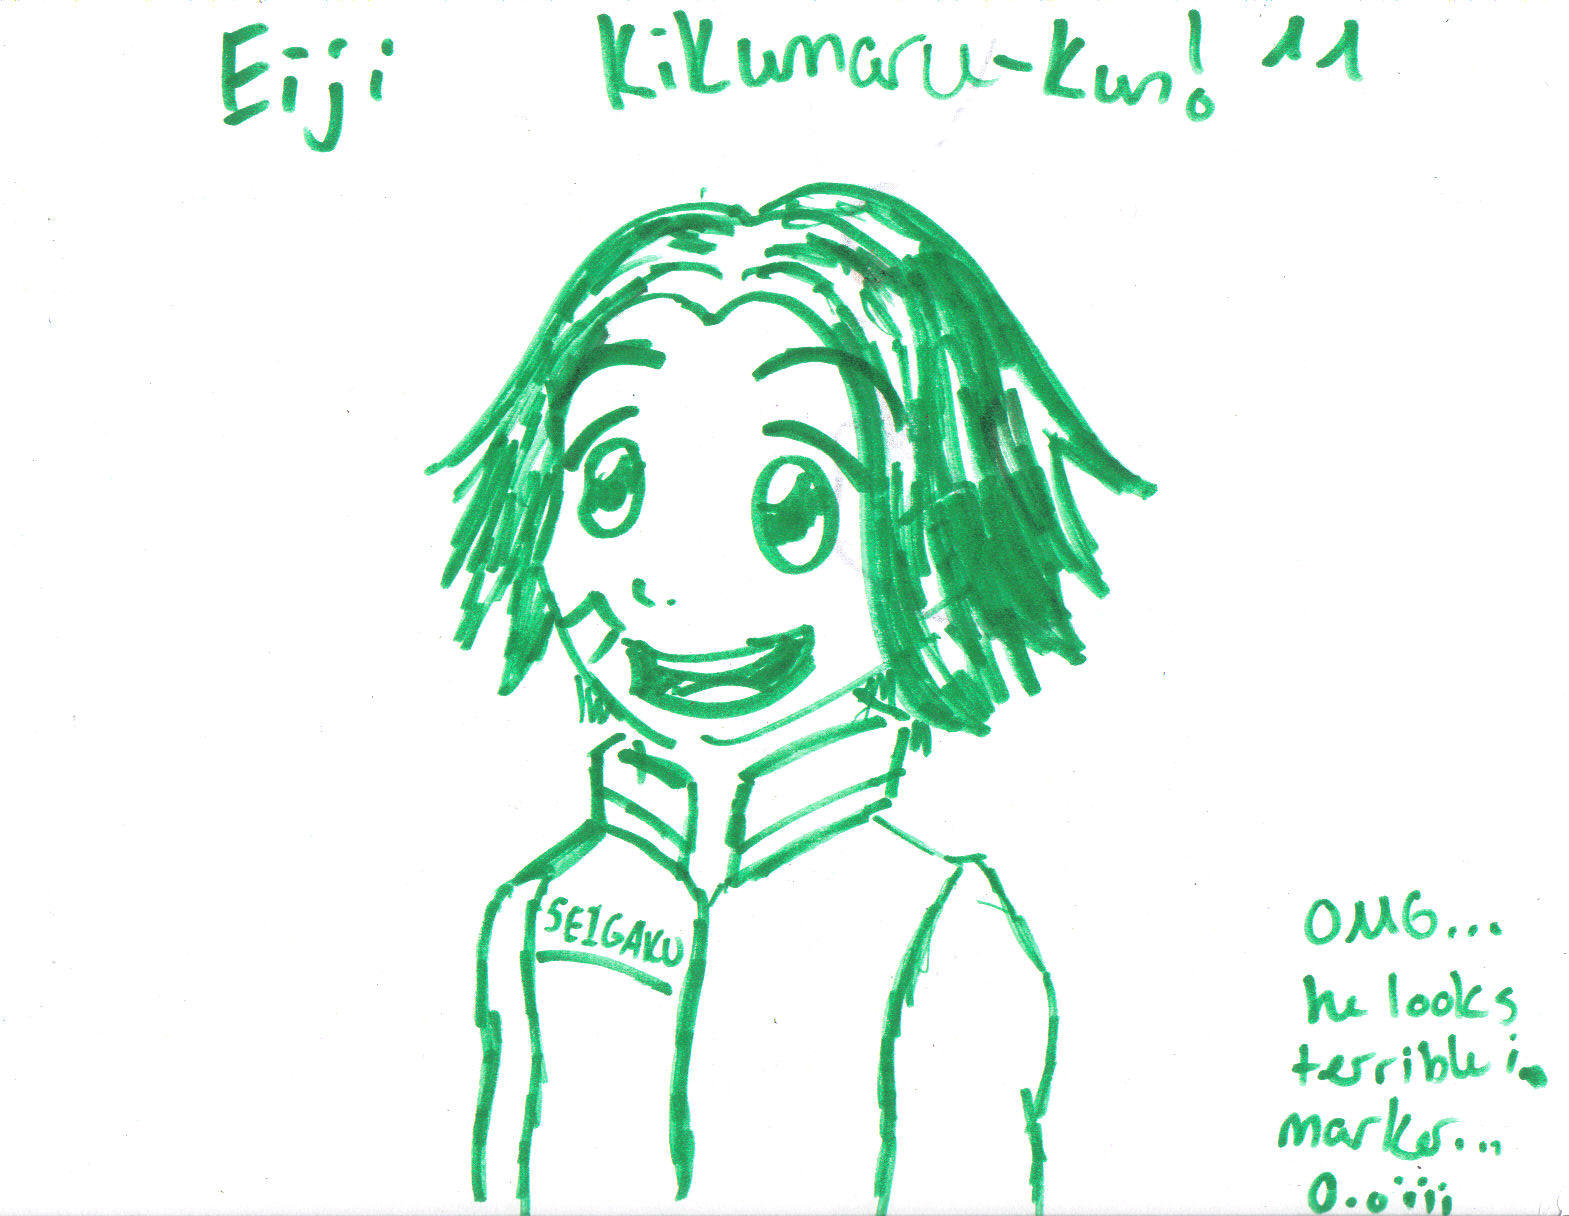 Kikumaru in crayola marker by gohan209